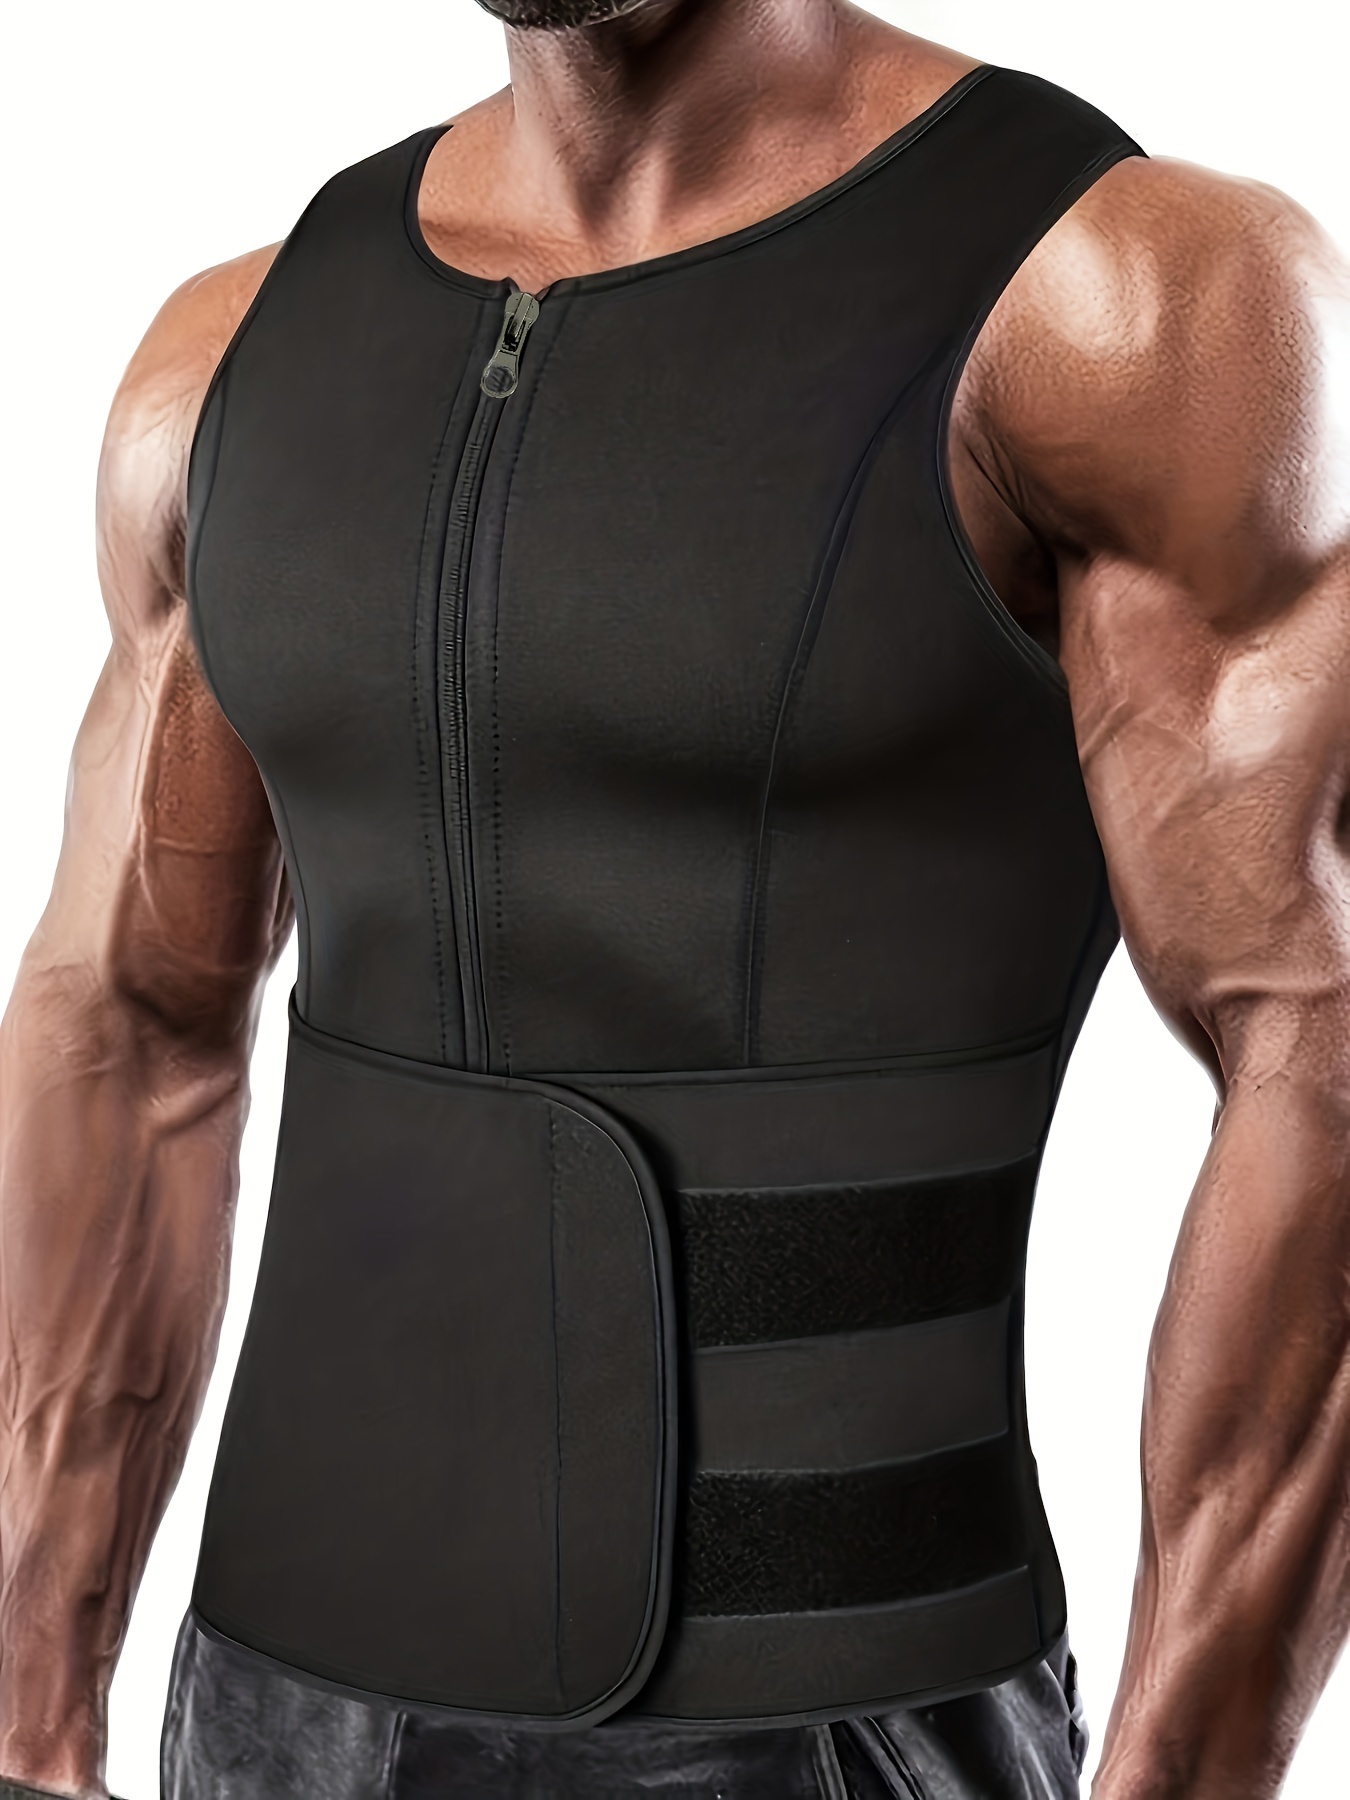 Men's Hot Sweat Sauna Zipper Tank Top Waist Shaper Vest for Weight